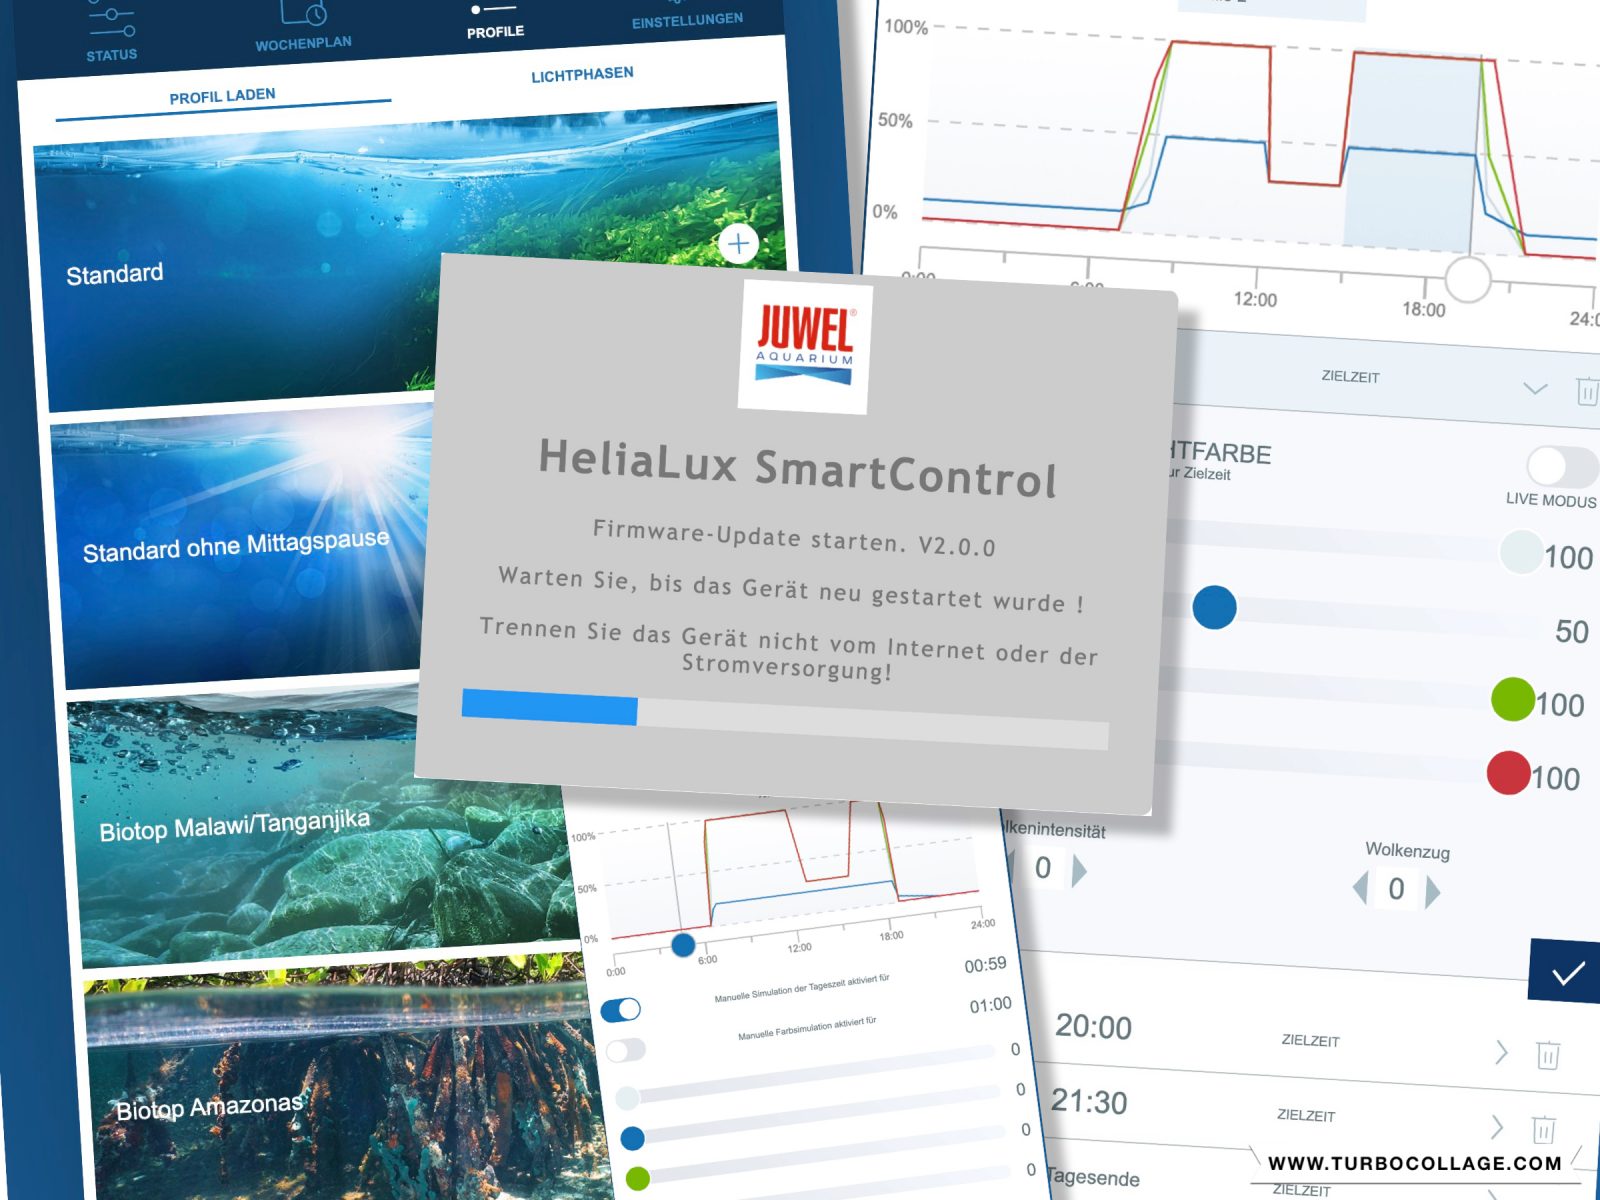 Alles besser in 2.0 – Neue Firmware wertet den HeliaLux SmartControl ordentlich auf